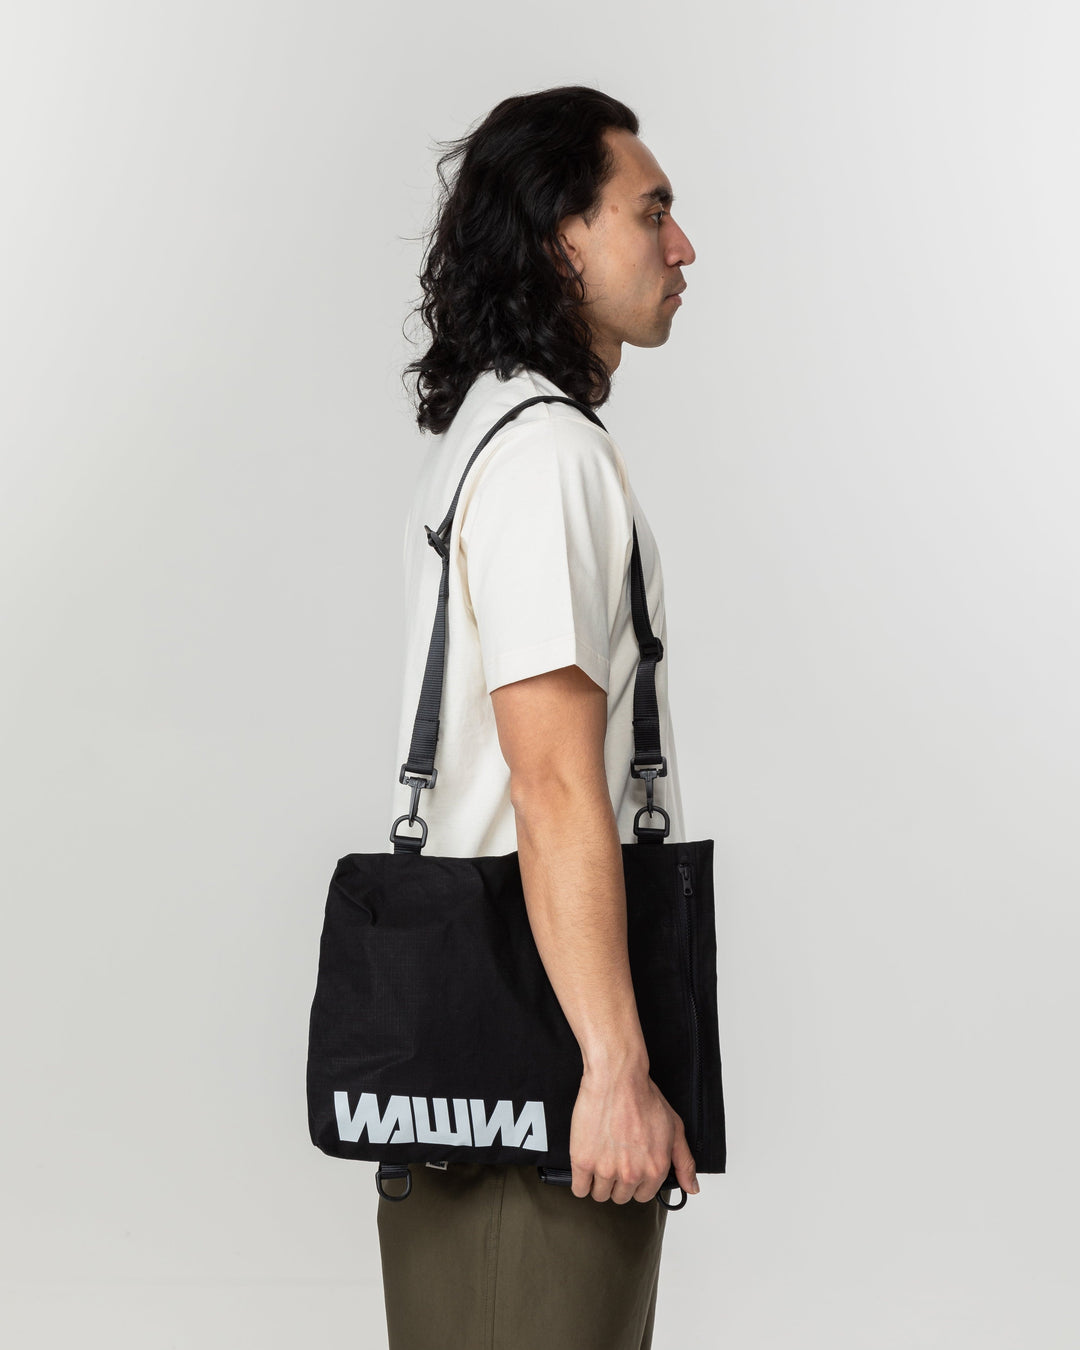 Kartis Extendable Messenger Bag - Black